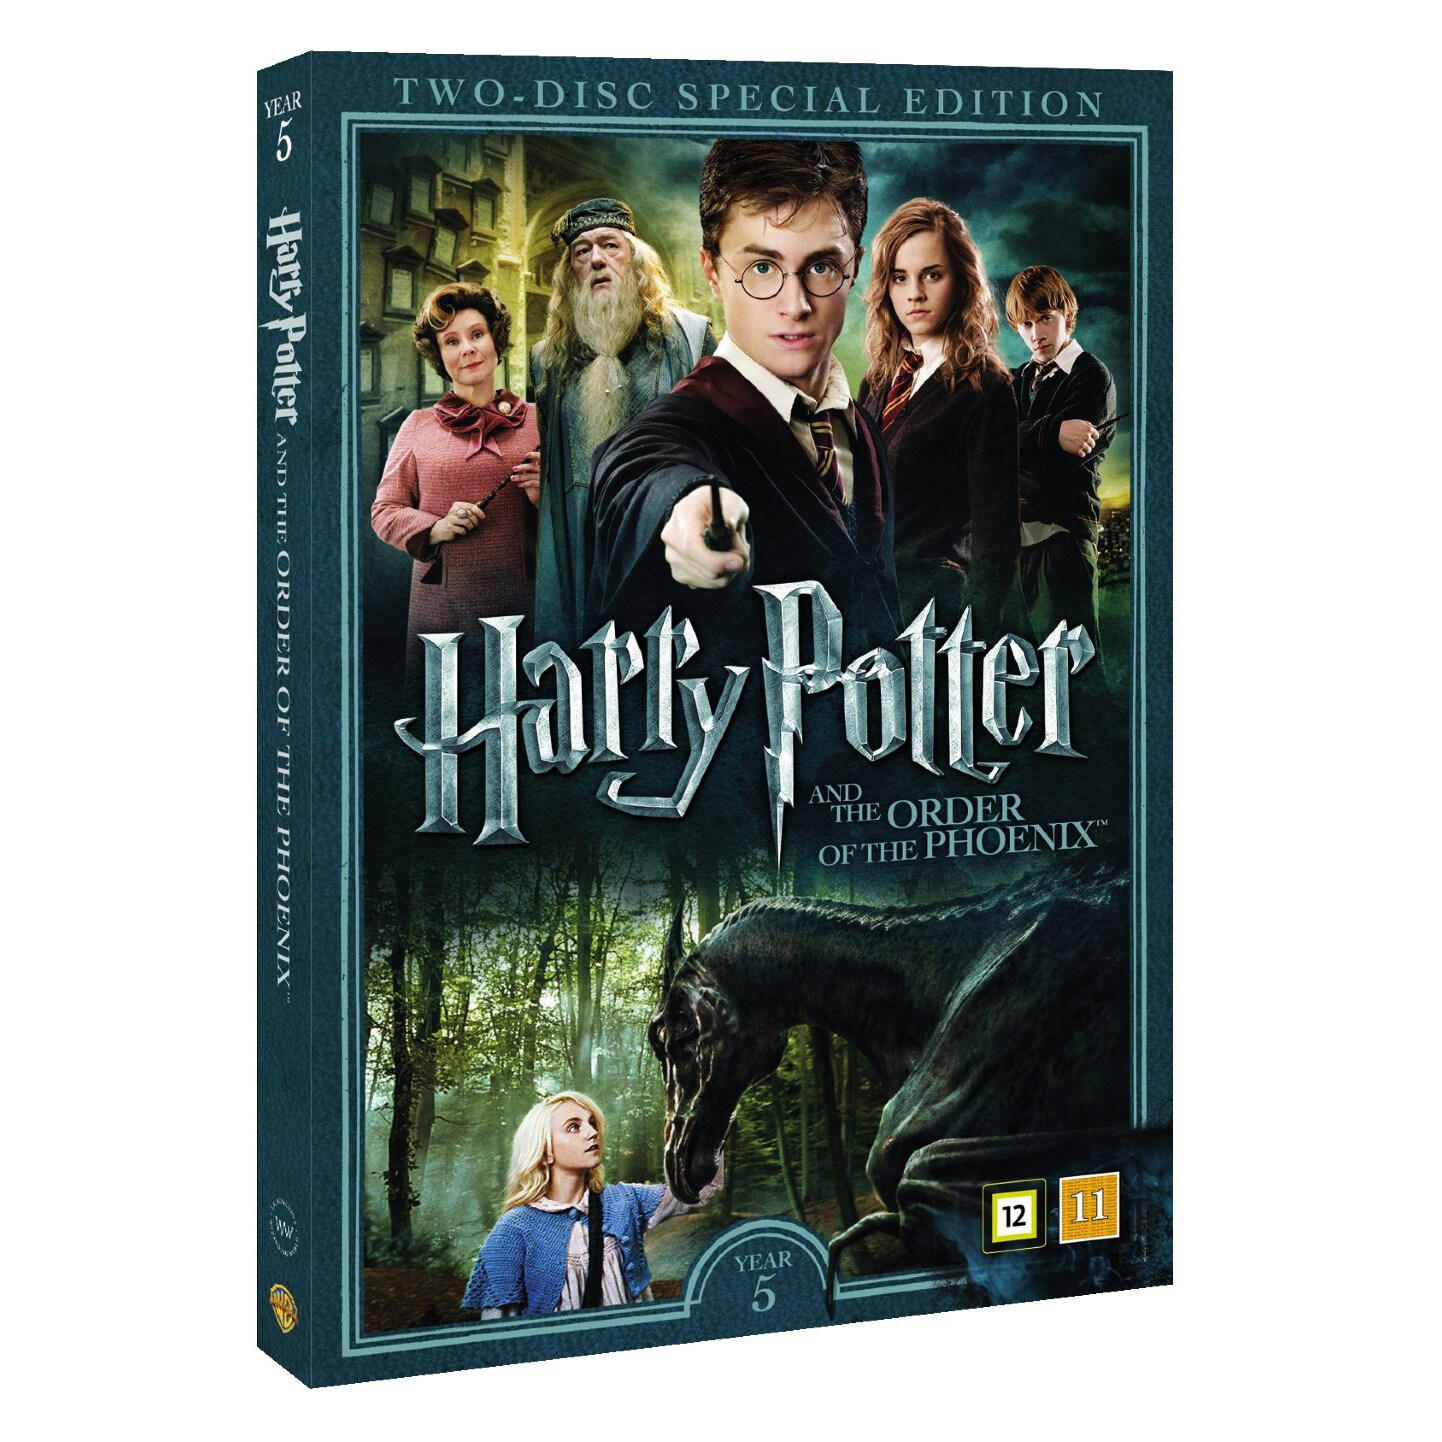 Harry Potter Og Fønixordenen + dokumentar - DVD | Elgiganten